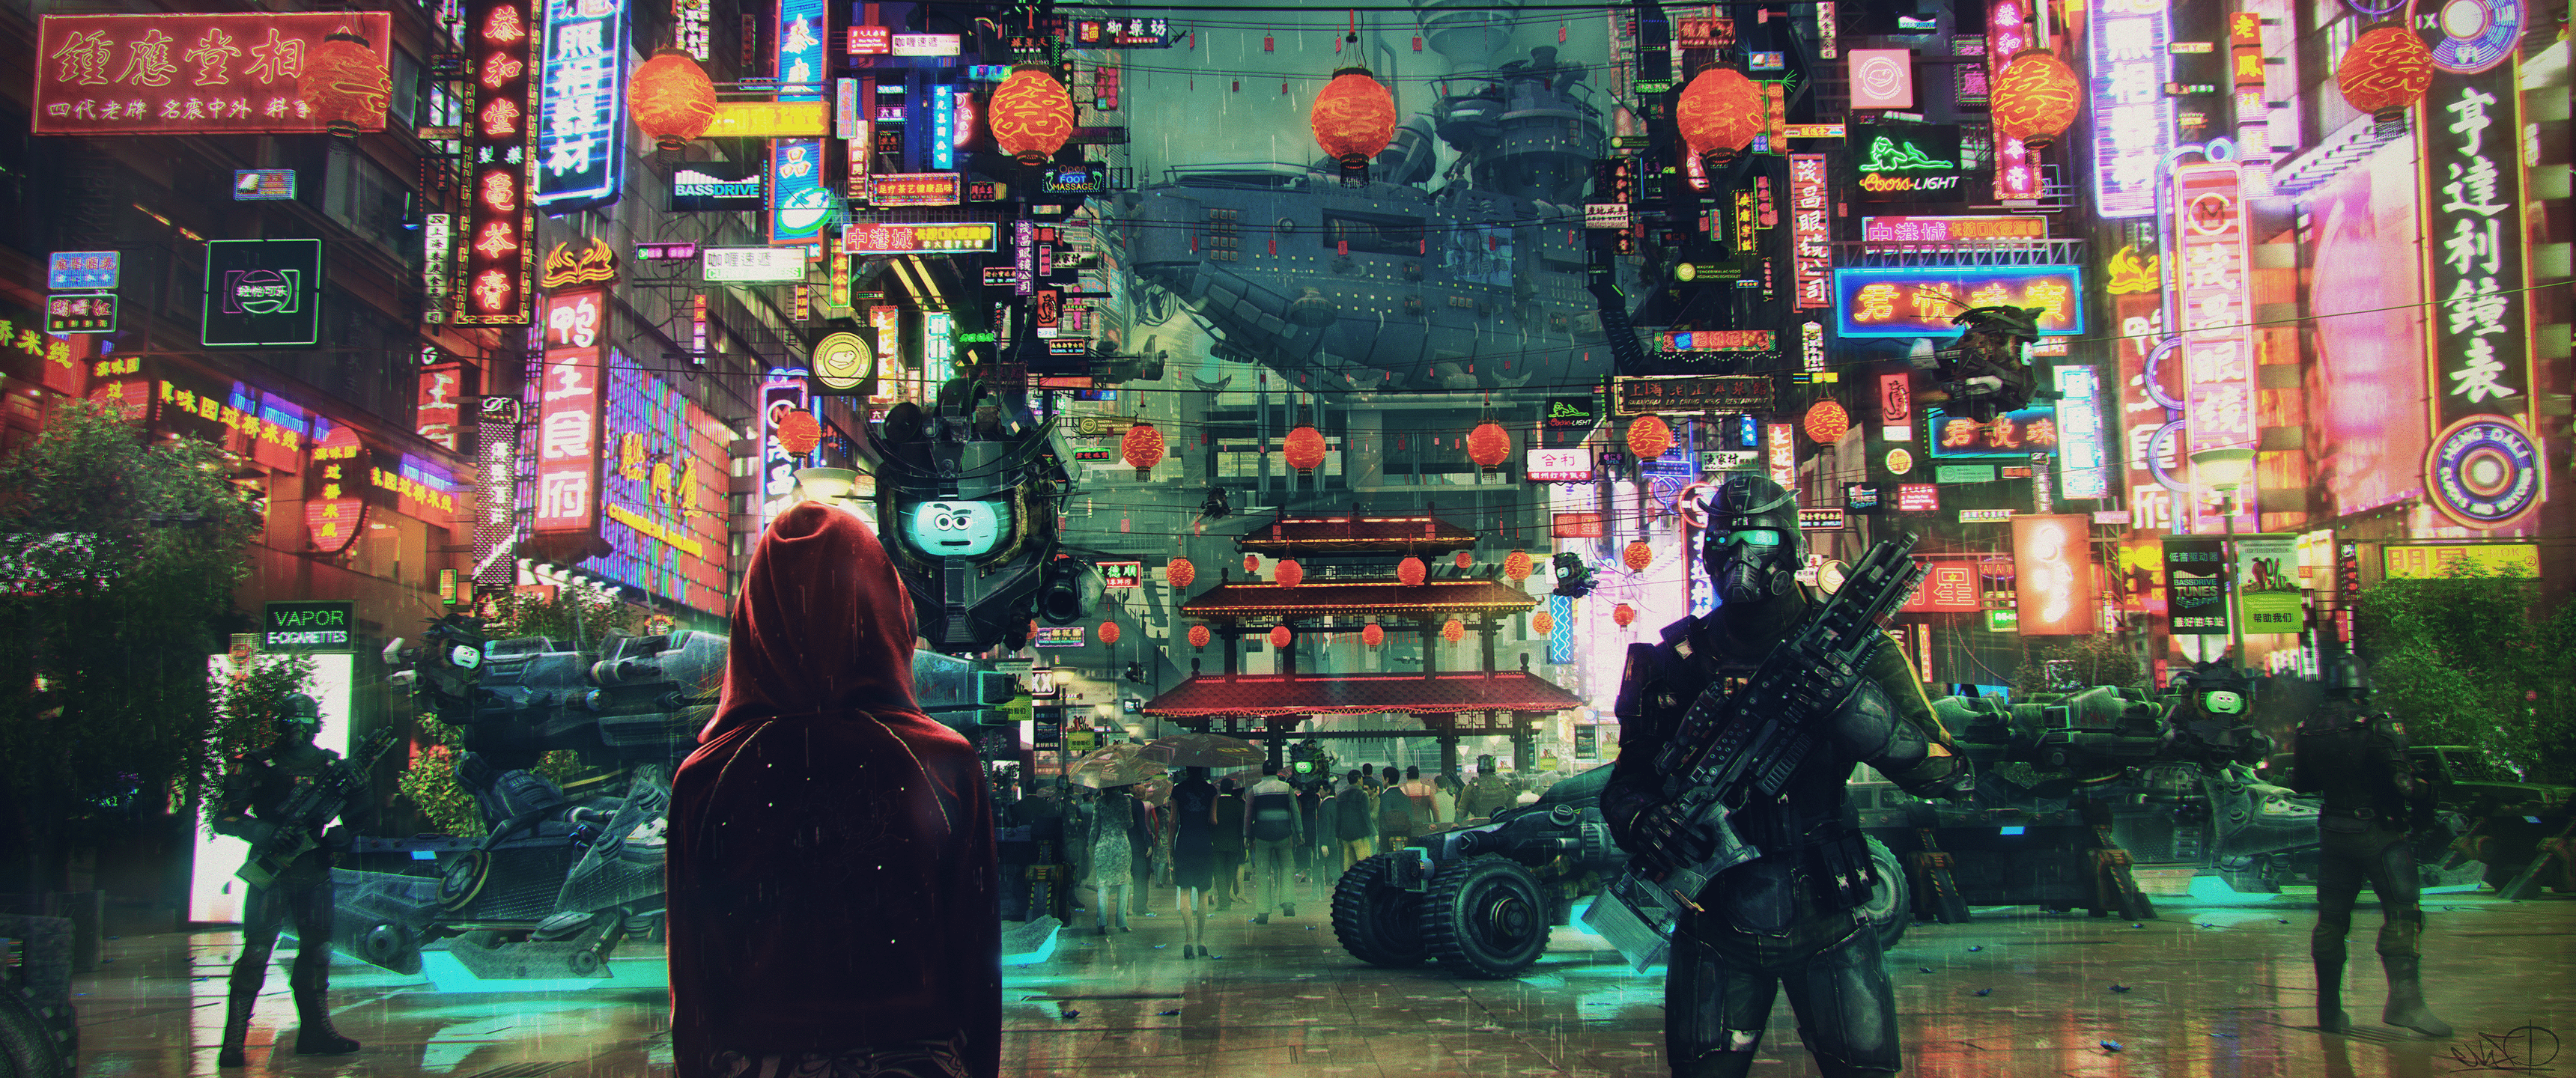 Hình nền siêu rộng Cyberpunk đẹp, ẩn chứa những bí mật và trở thành nguồn cảm hứng cho công nghệ tương lai. Để hiểu thêm về thế giới này, hãy tải về hình nền siêu rộng Cyberpunk của chúng tôi và khám phá những điều kỳ diệu.